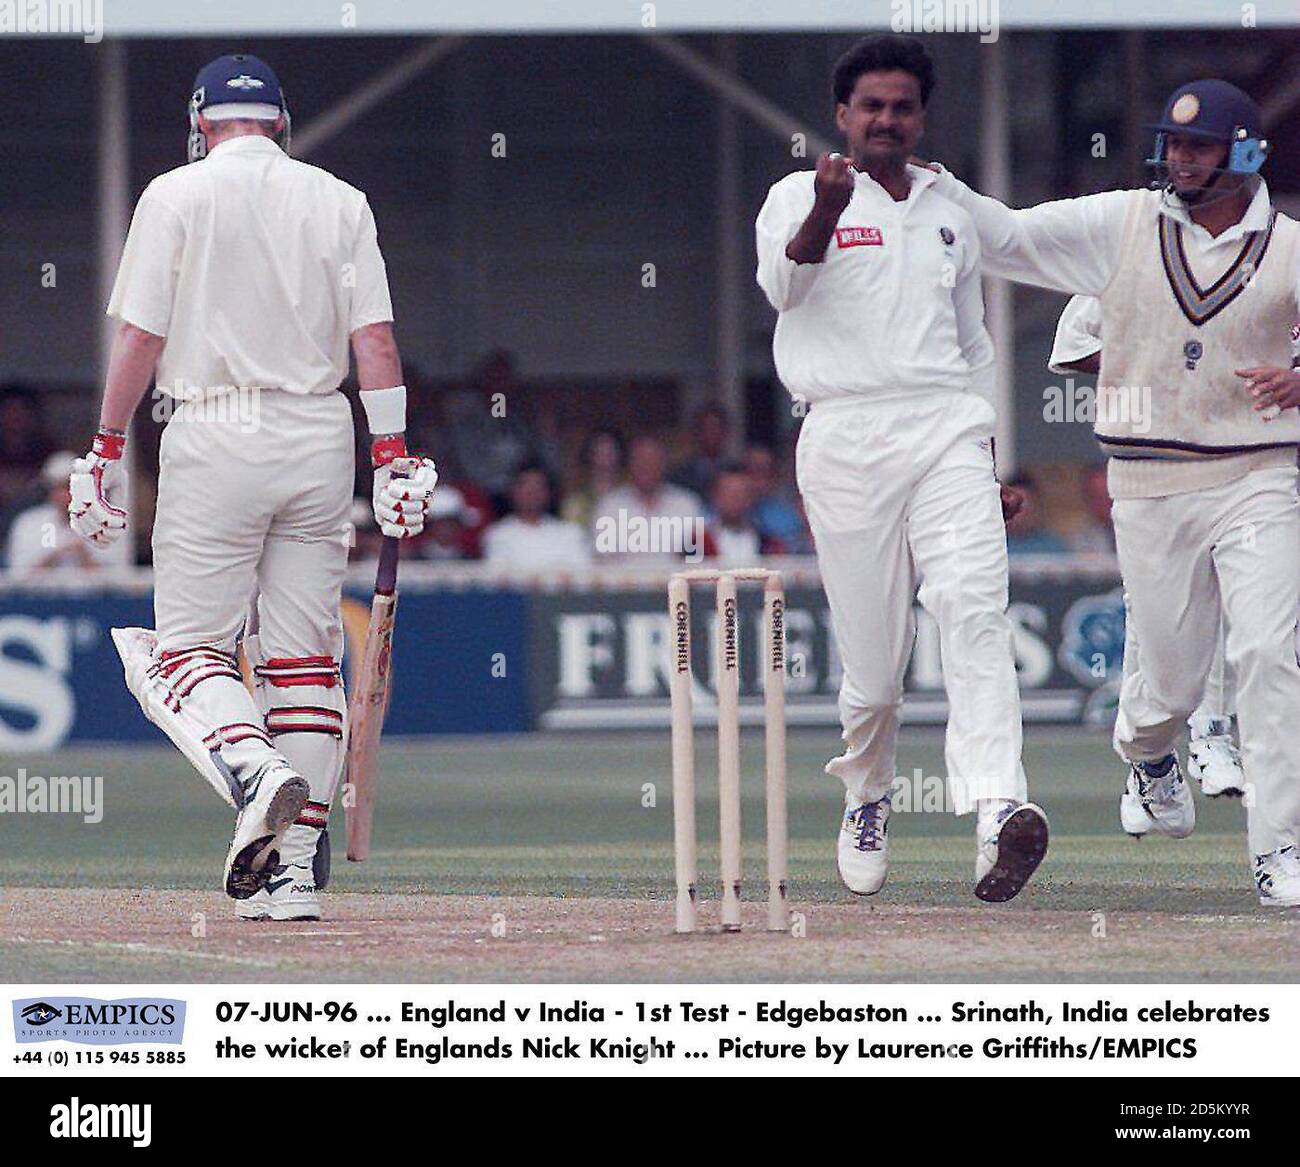 07-JUIN-96 ... Angleterre / Inde - 1er Test - Edgebaston ... Srinath, Inde célèbre la cricket d'Englands Nick Knight ... Photo de Laurence Griffiths/EMPICS Banque D'Images